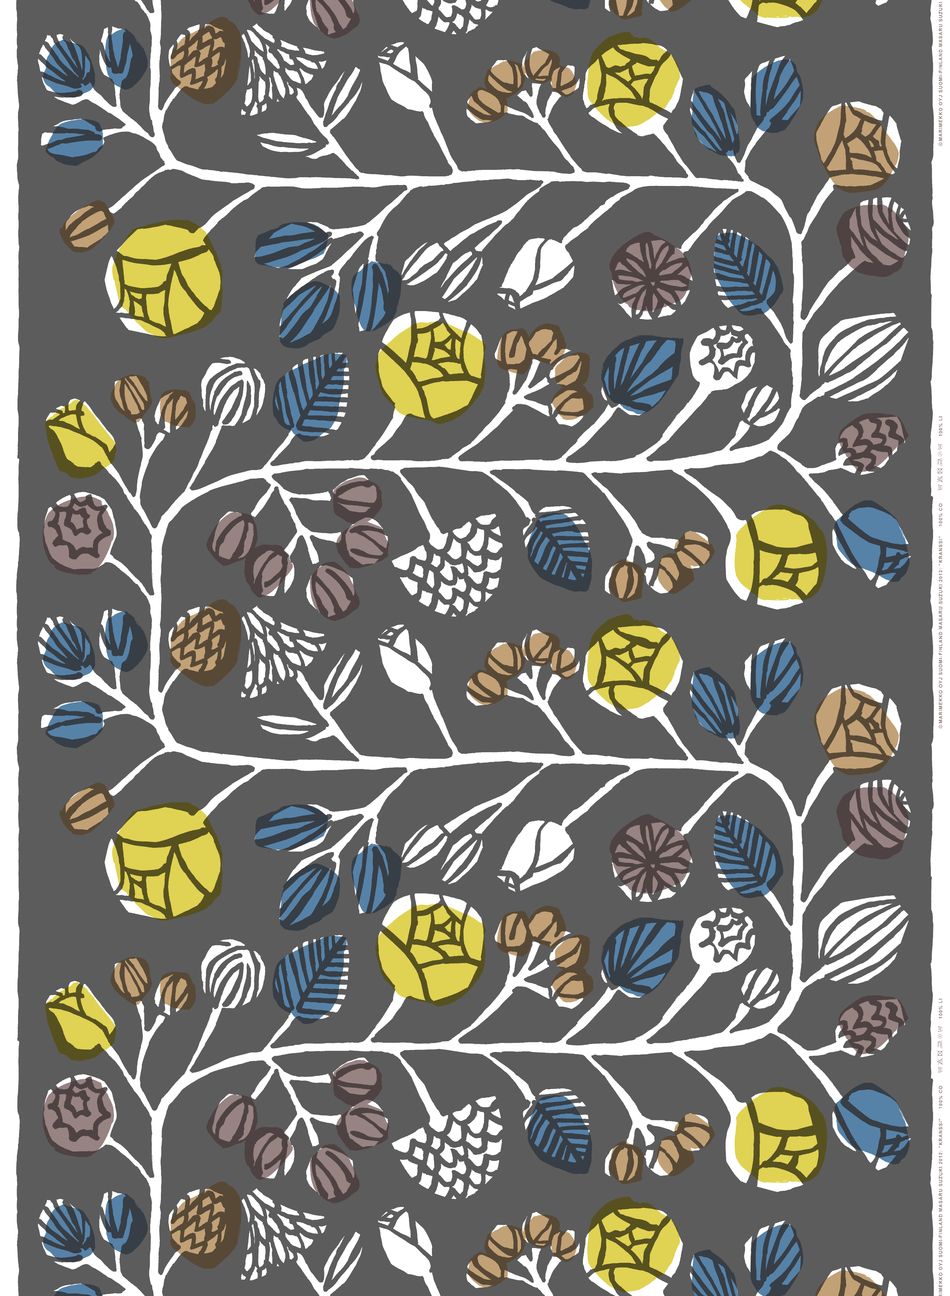 new fabrics from Marimekko for this season — danish architecture 